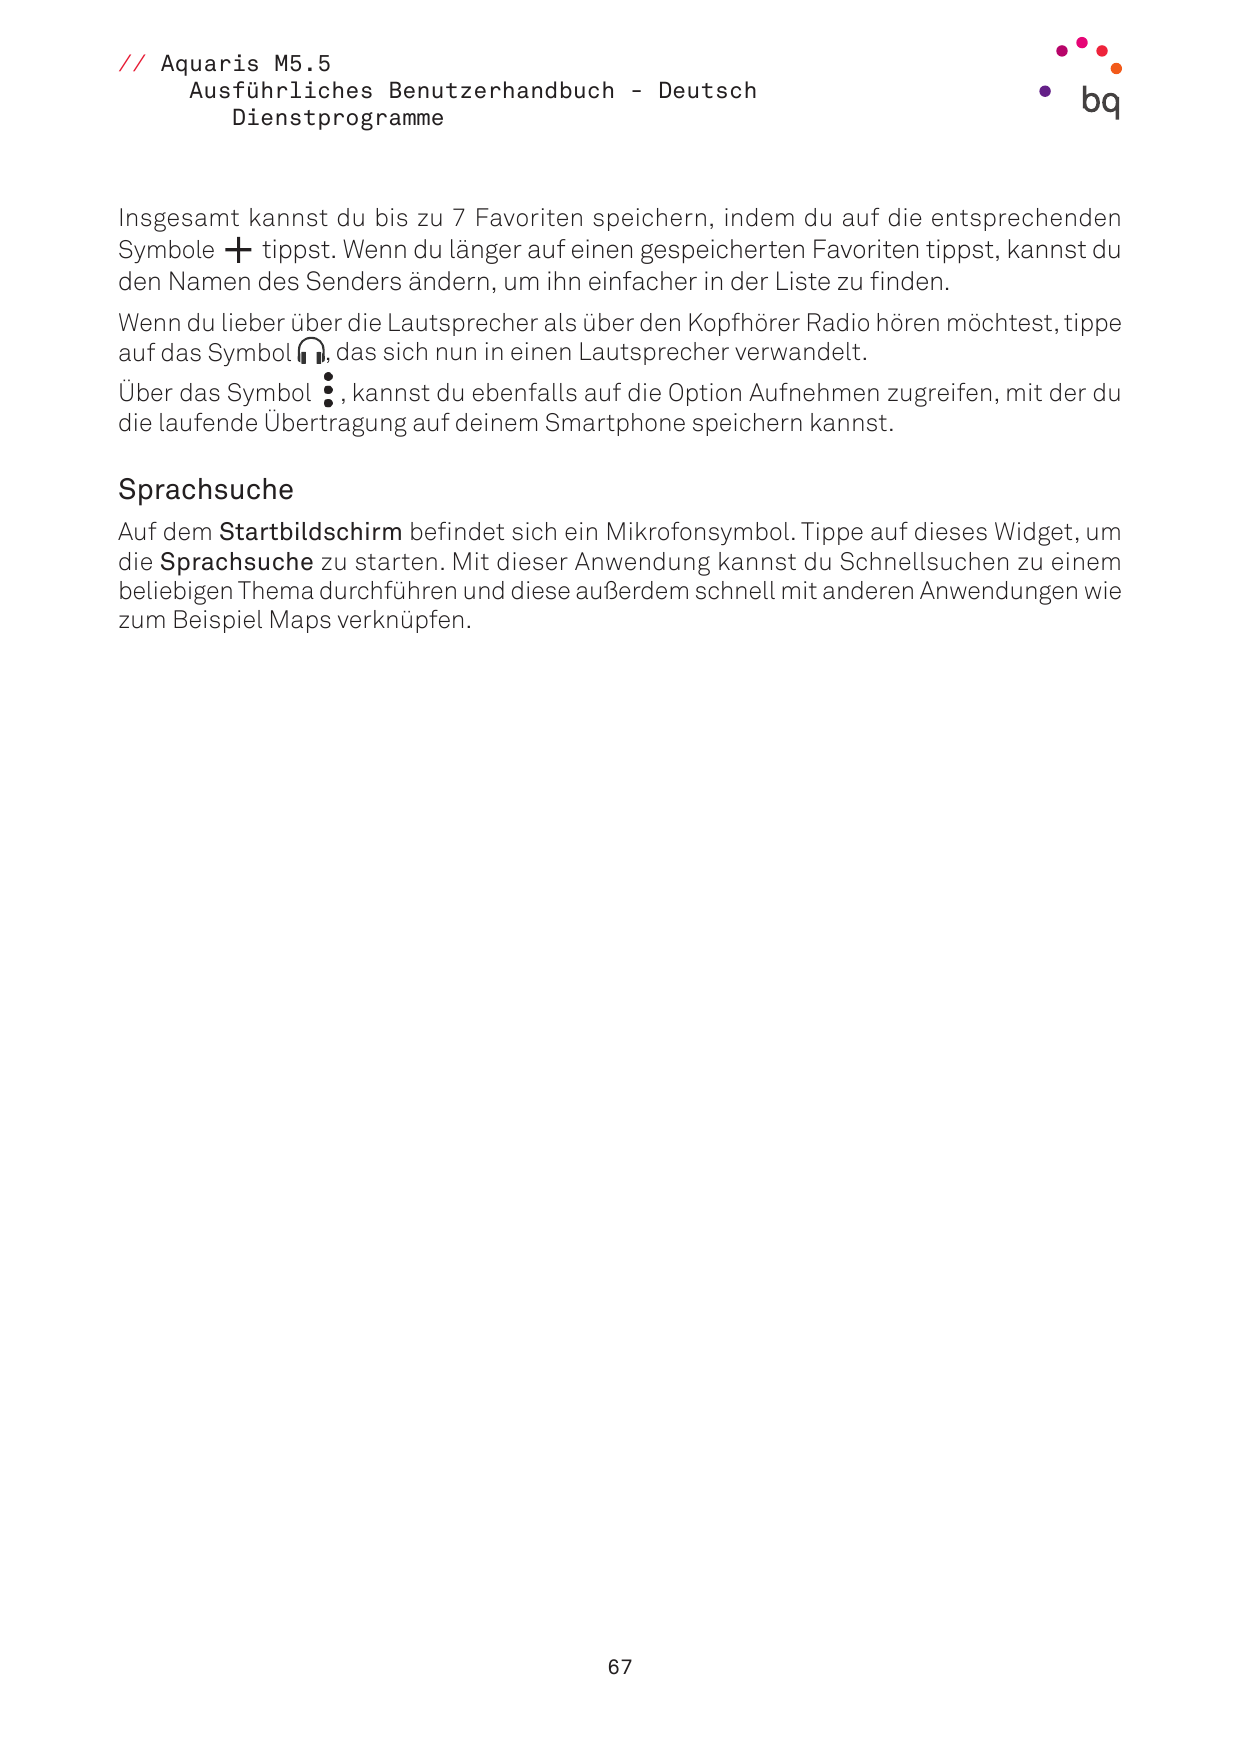 // Aquaris M5.5Ausführliches Benutzerhandbuch - DeutschDienstprogrammeInsgesamt kannst du bis zu 7 Favoriten speichern, indem du